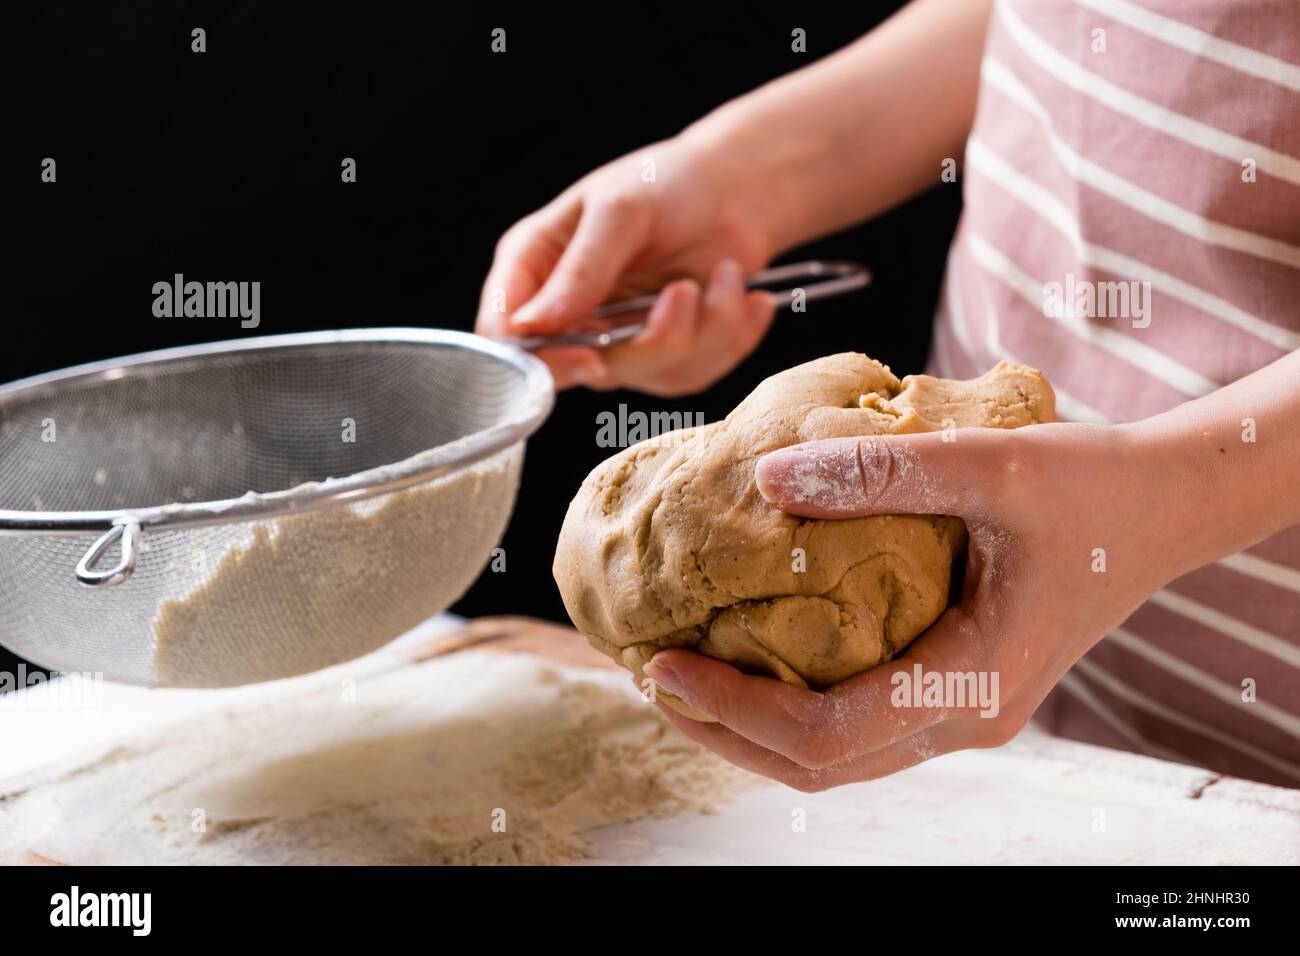 Primo piano la donna setaccia la farina di grano attraverso un setaccio in un recipiente di miscelazione per la preparazione dell'impasto per la torta e la panetteria su sfondo nero. Impastare l'impasto per ottenere la pasta fatta in casa. Foto Stock